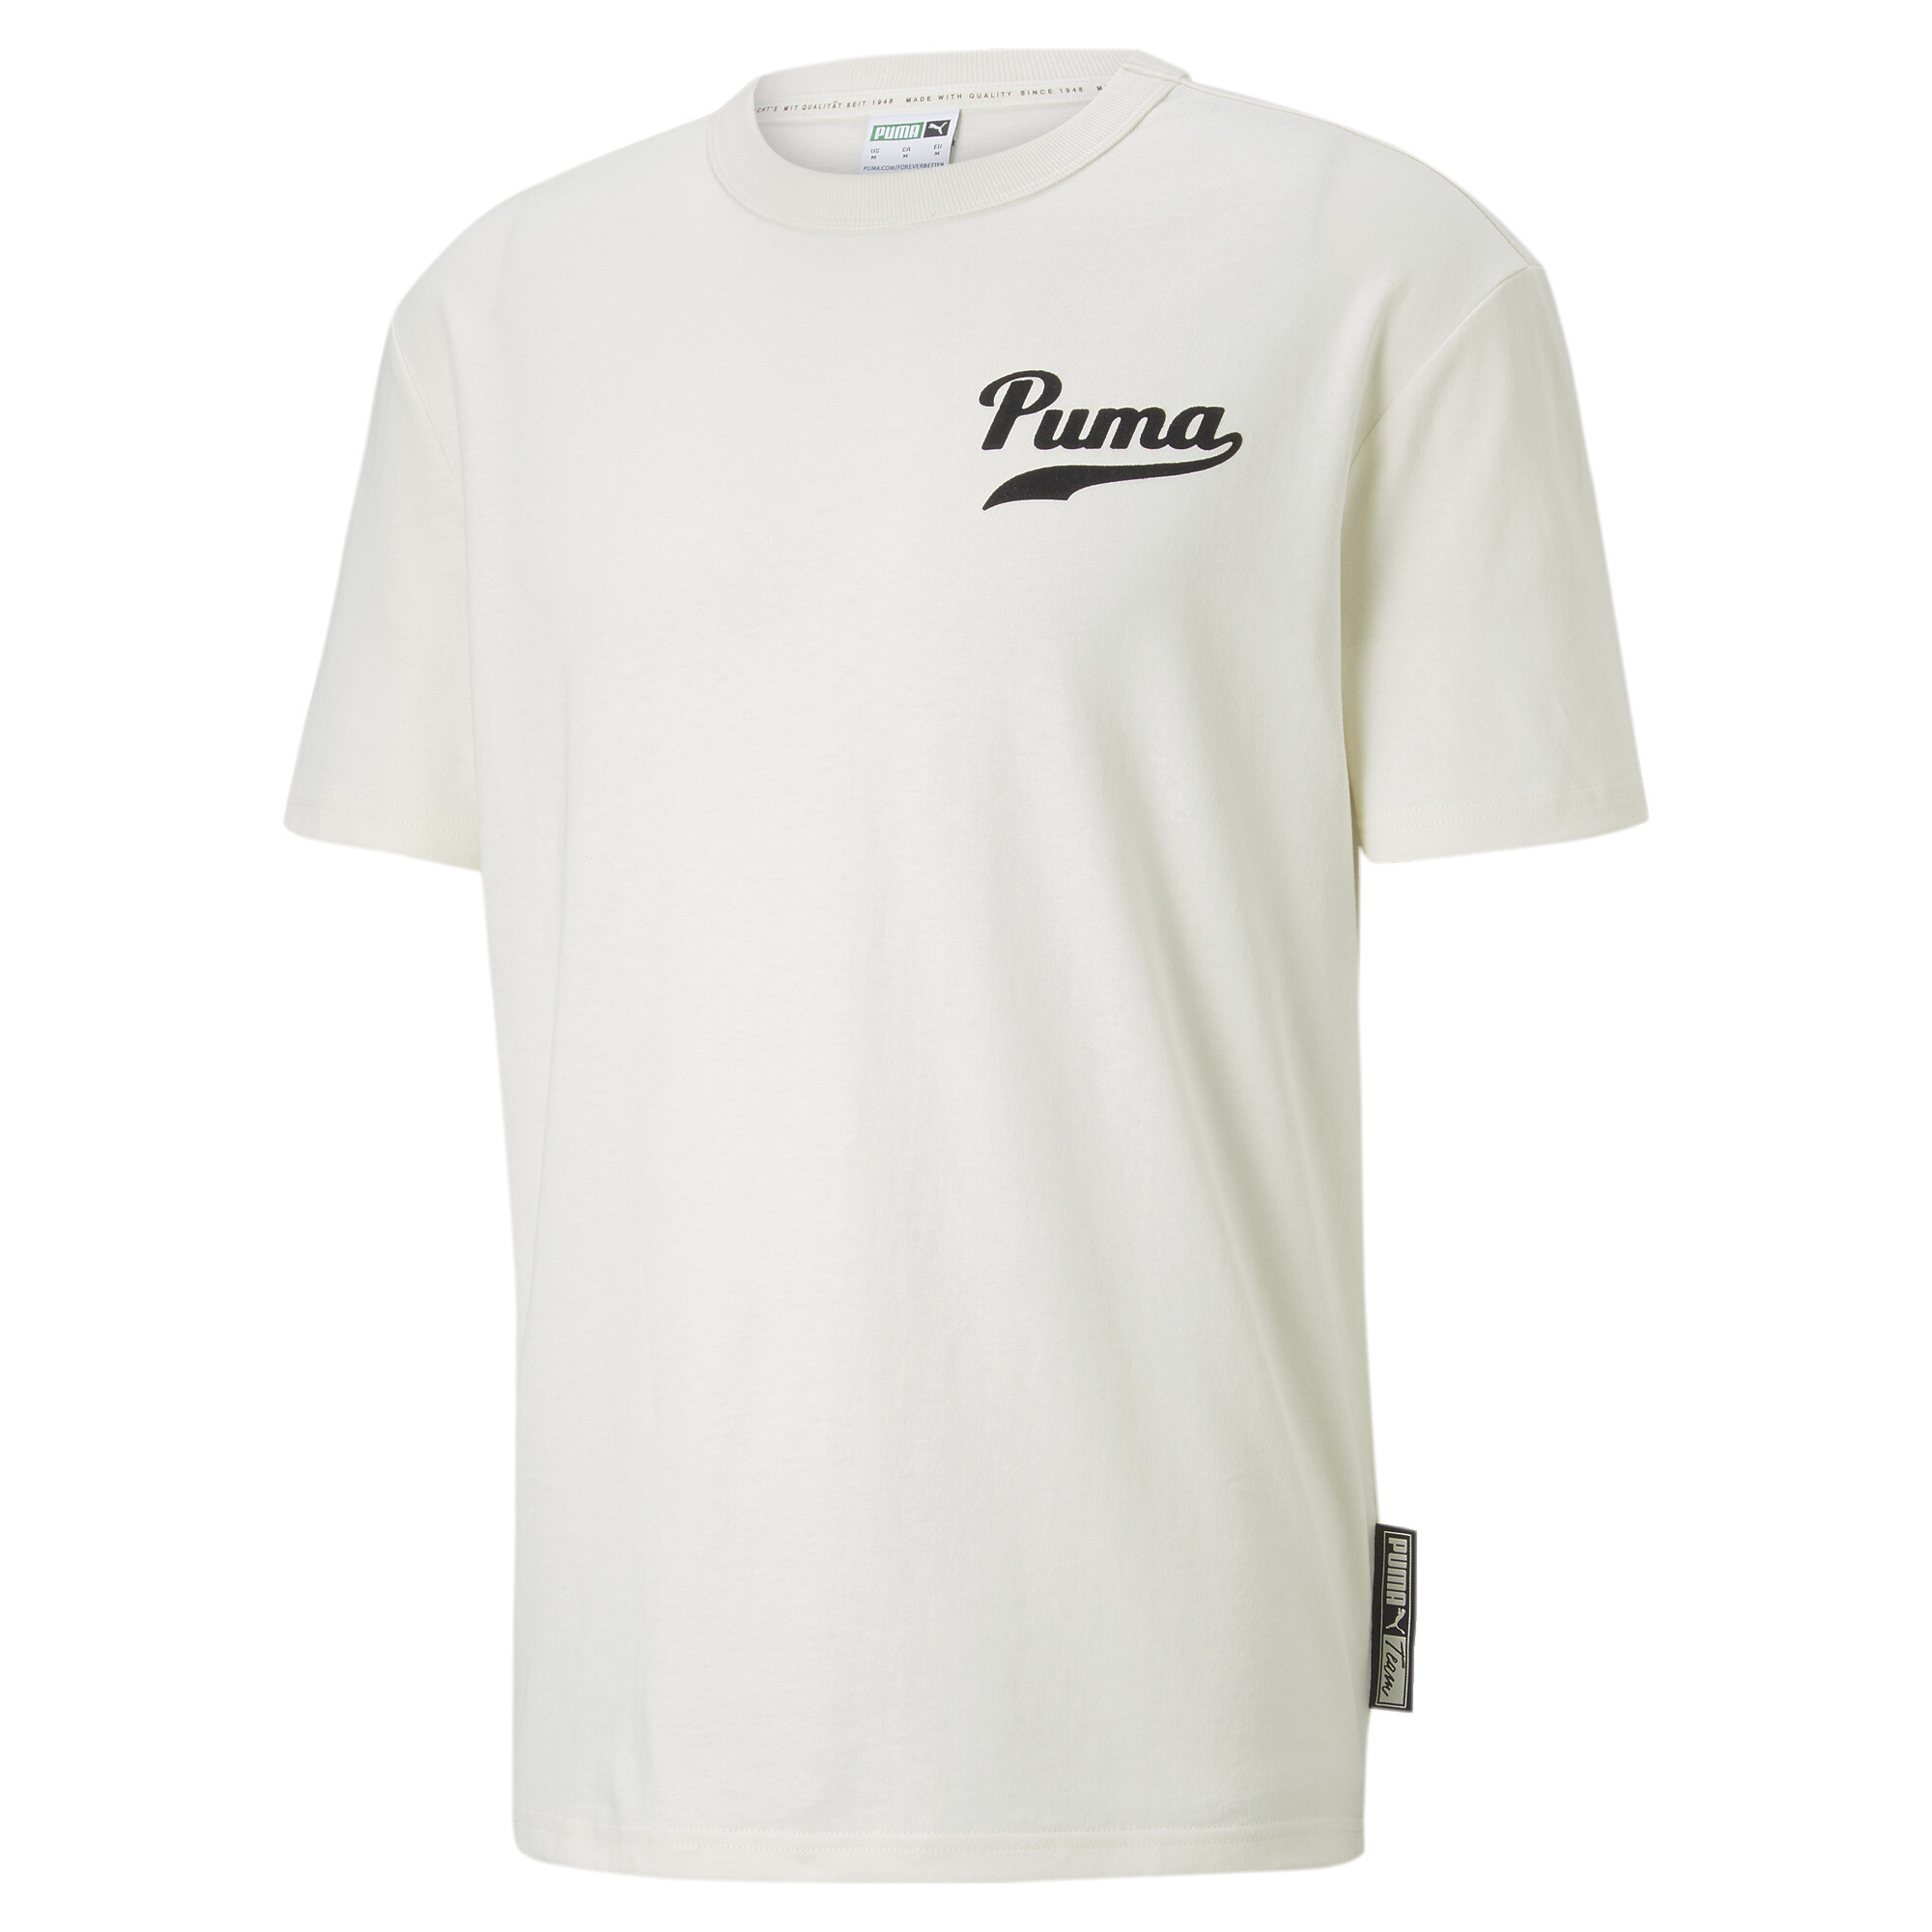 PUMA PUMA Team Grafik-T-Shirt mit Herren Männer T-Shirt Neu